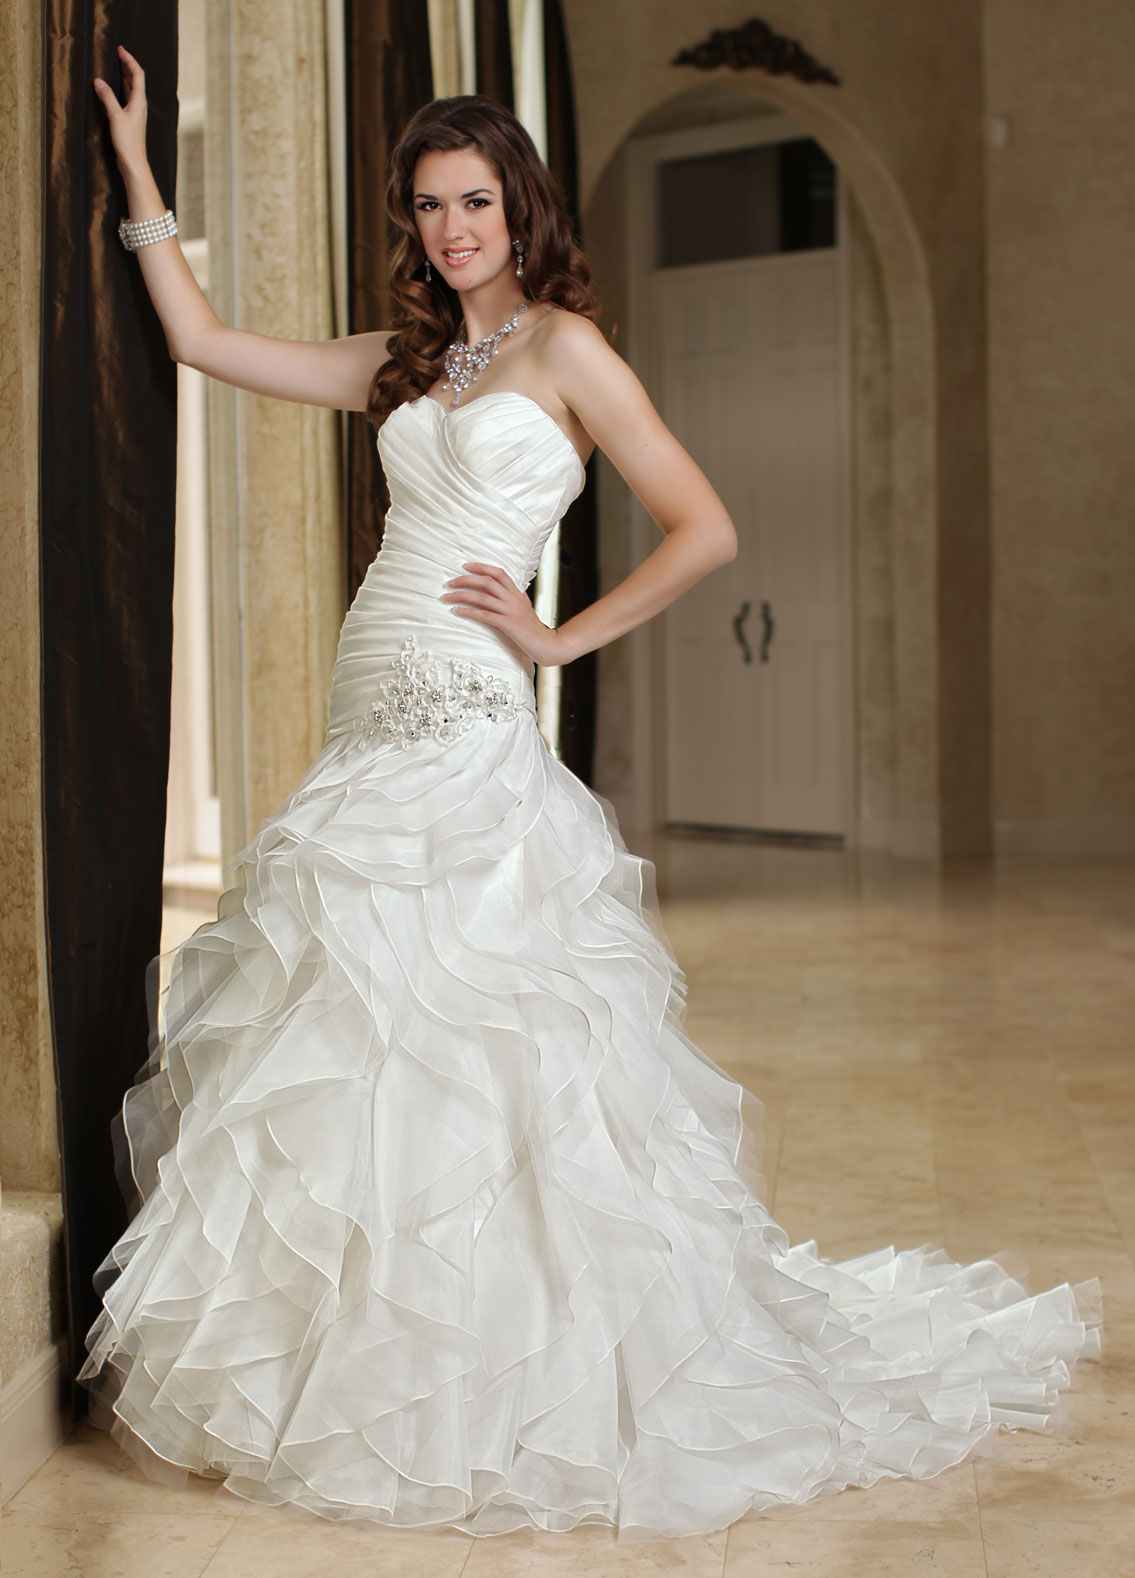 Ruffled Wedding Dresses Style #50178